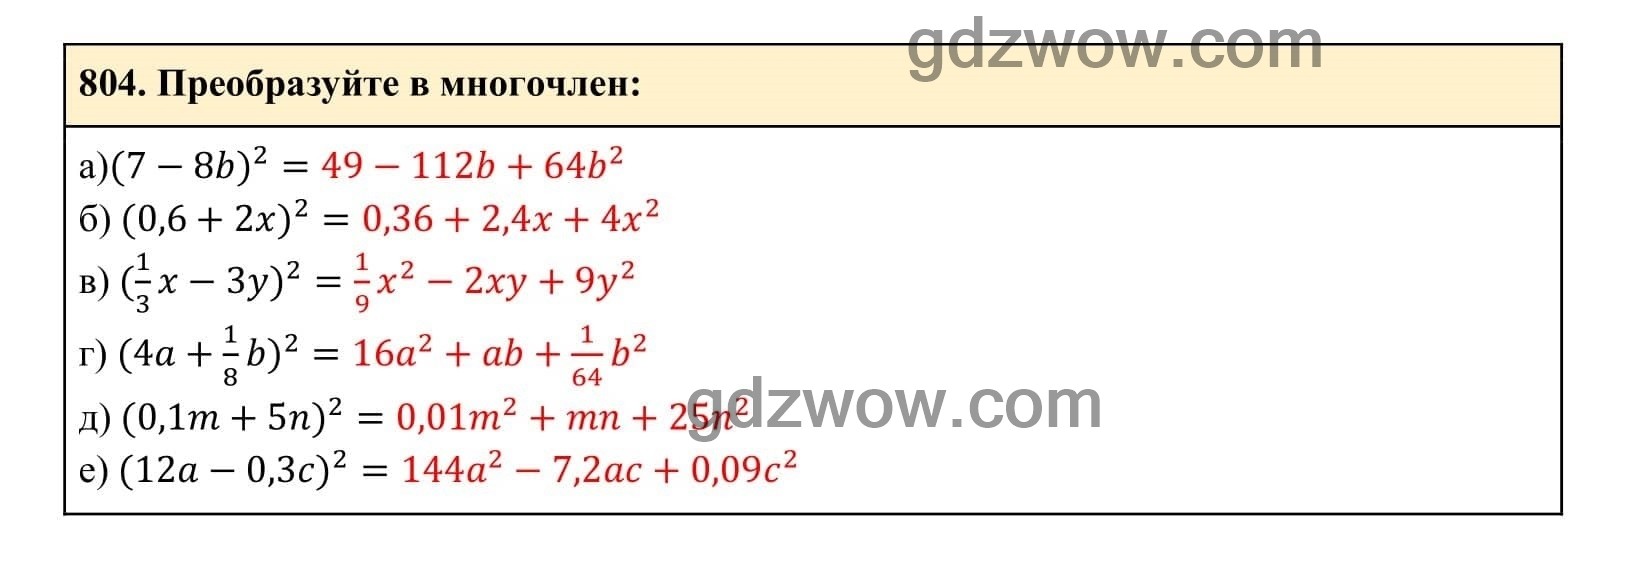 Упражнение 804 - ГДЗ по Алгебре 7 класс Учебник Макарычев (решебник) - GDZwow